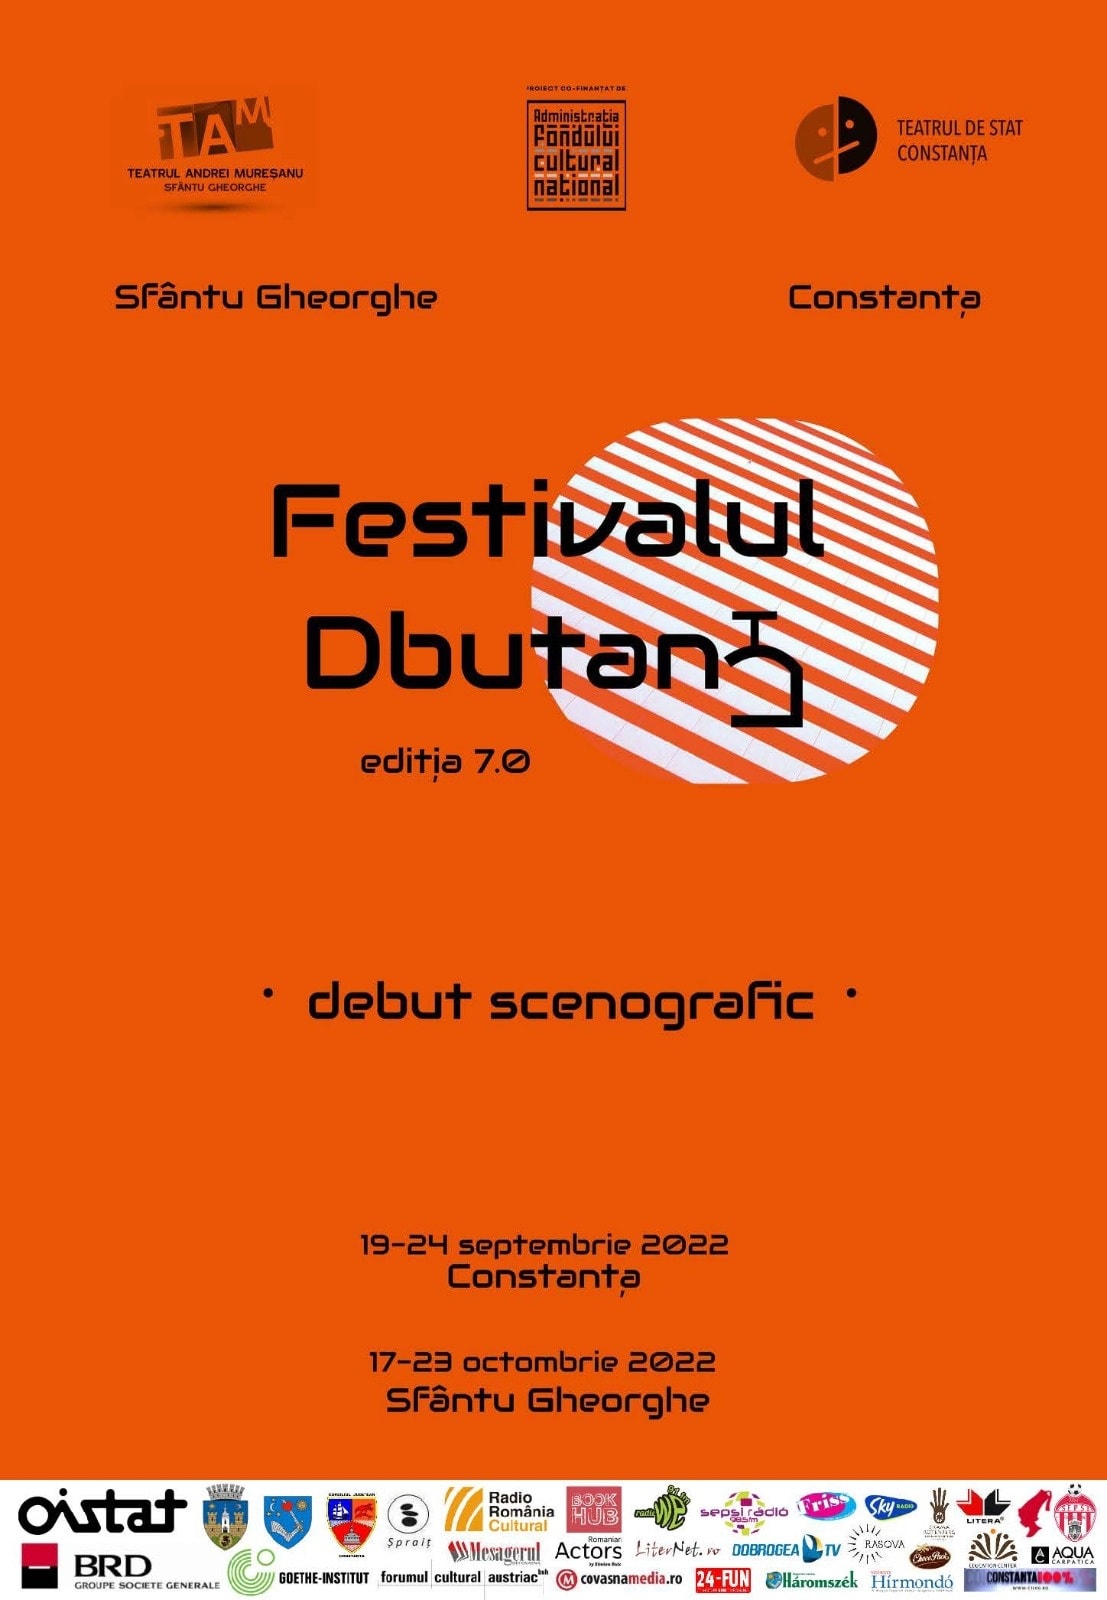 Încep înscrierile la Festivalul-Concurs DbutanT, ediția a VII-a